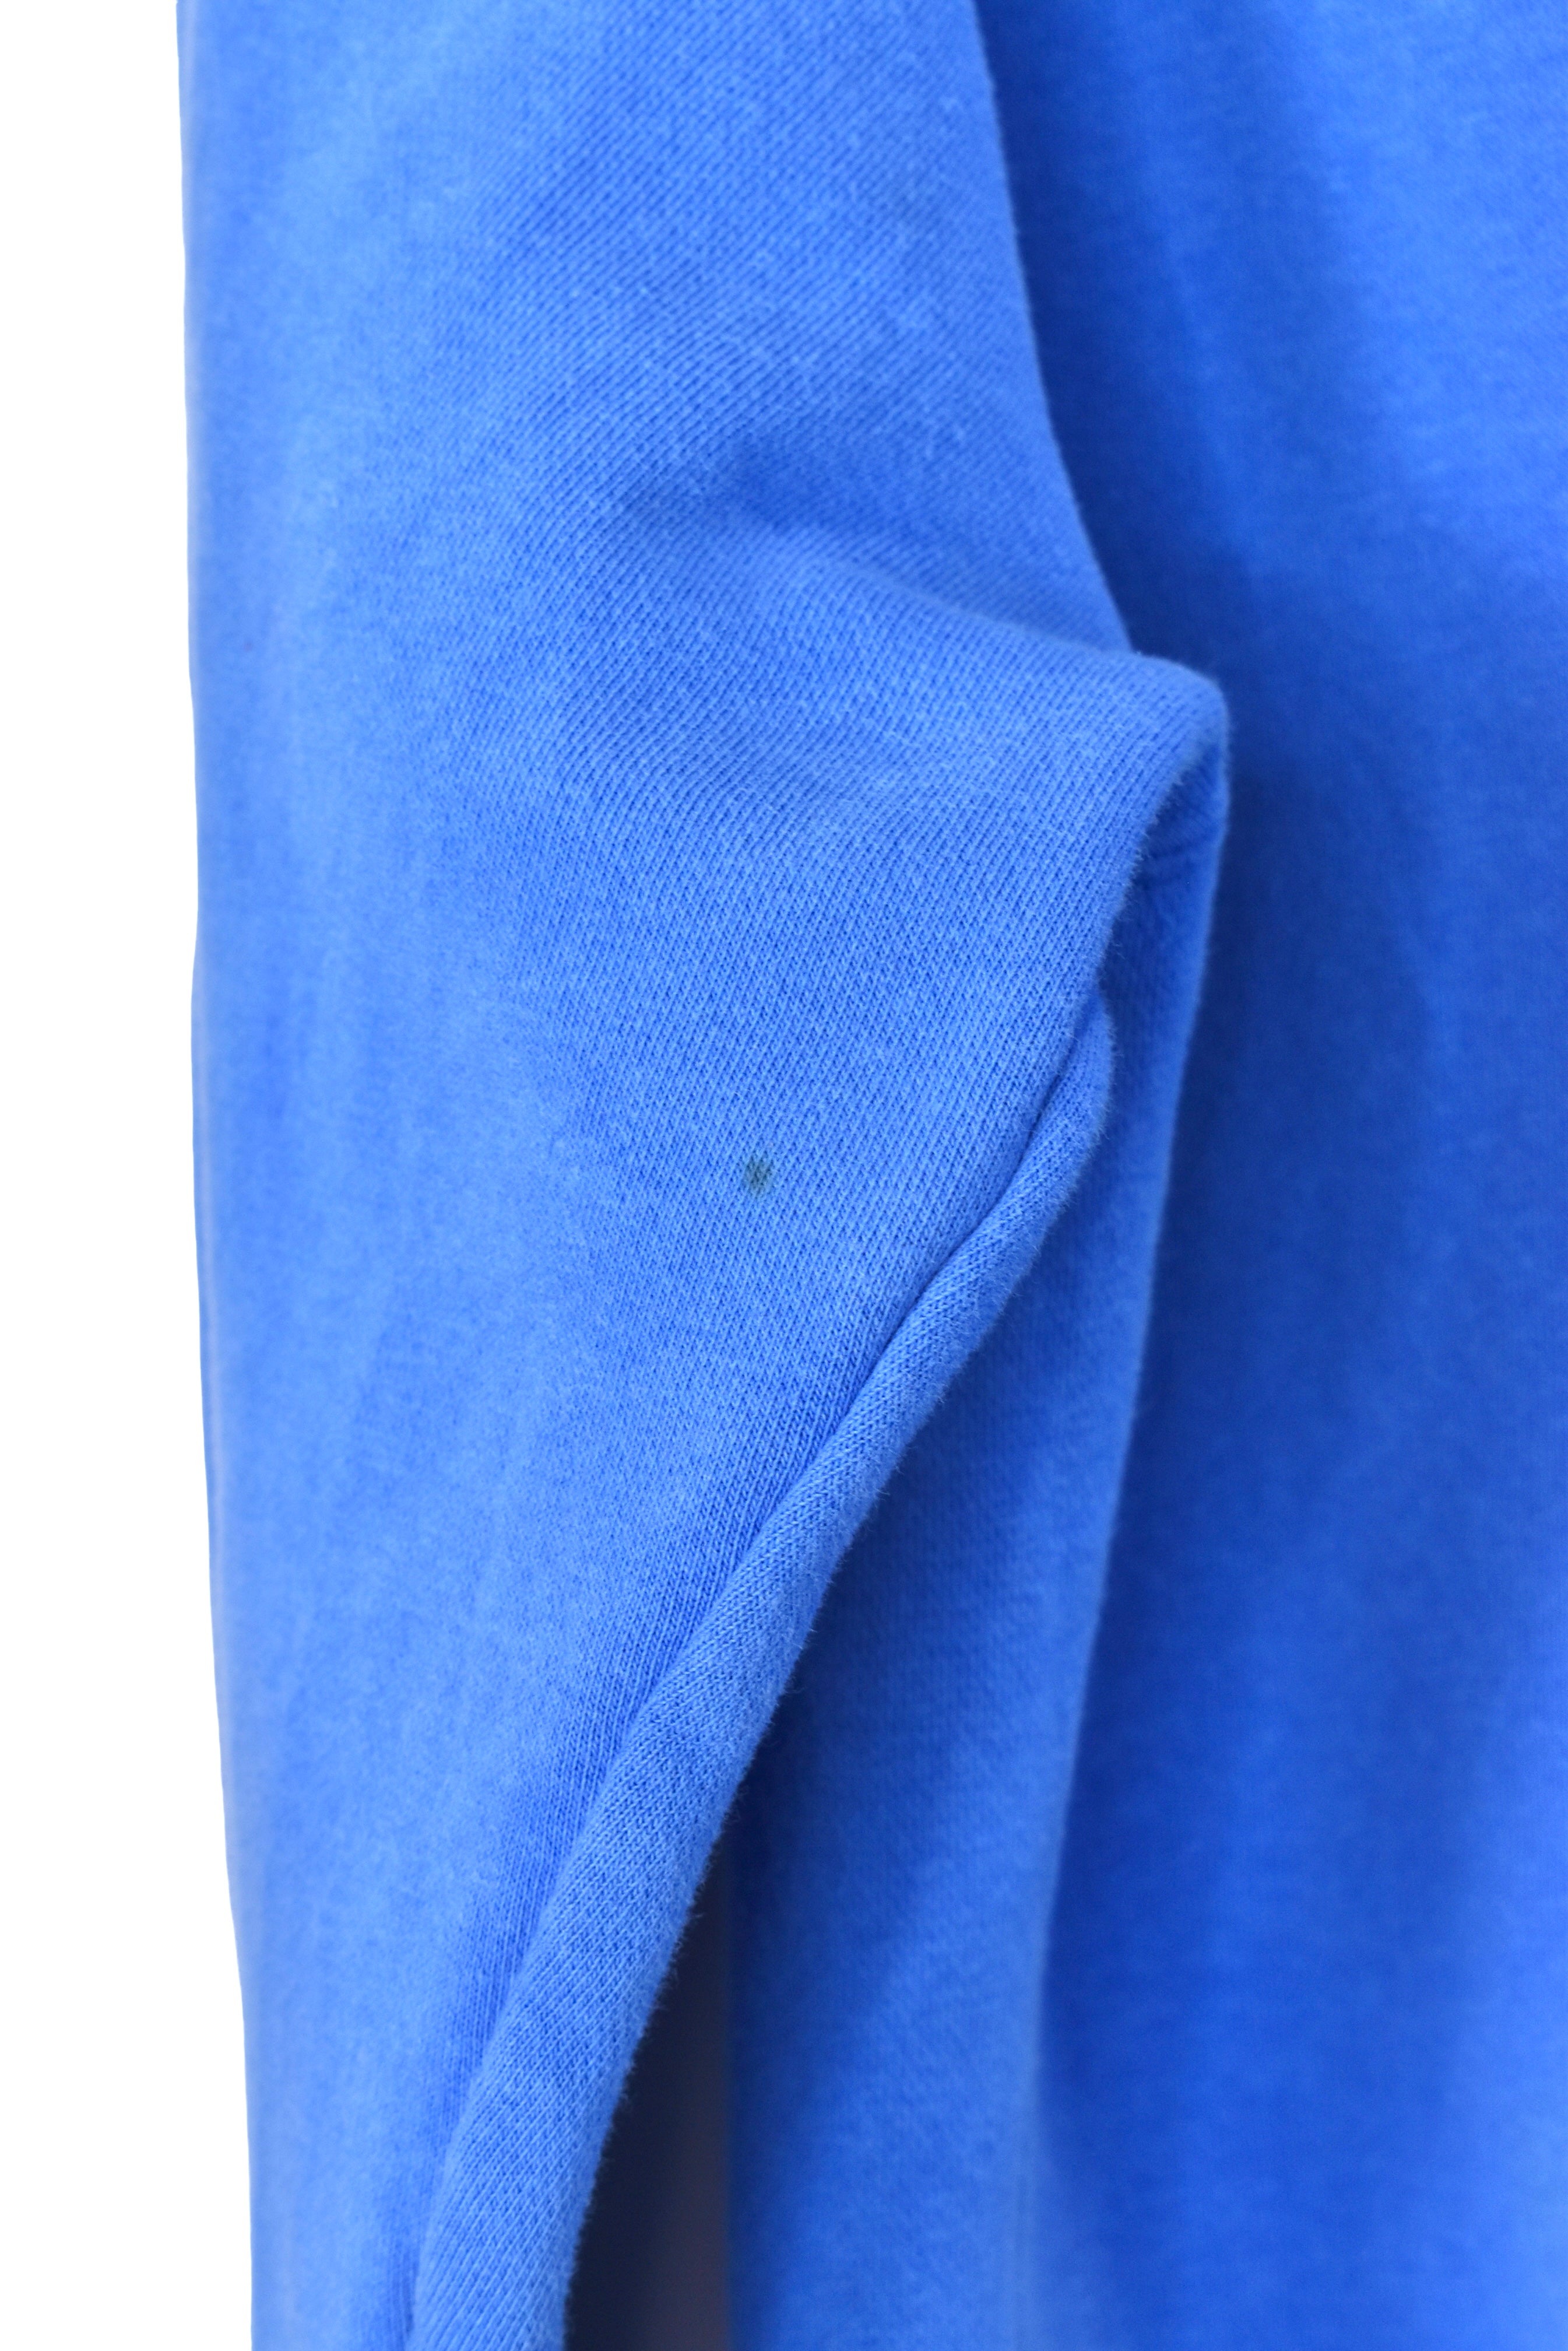 Vintage Nike hoodie, blue embroidered sweatshirt - Medium